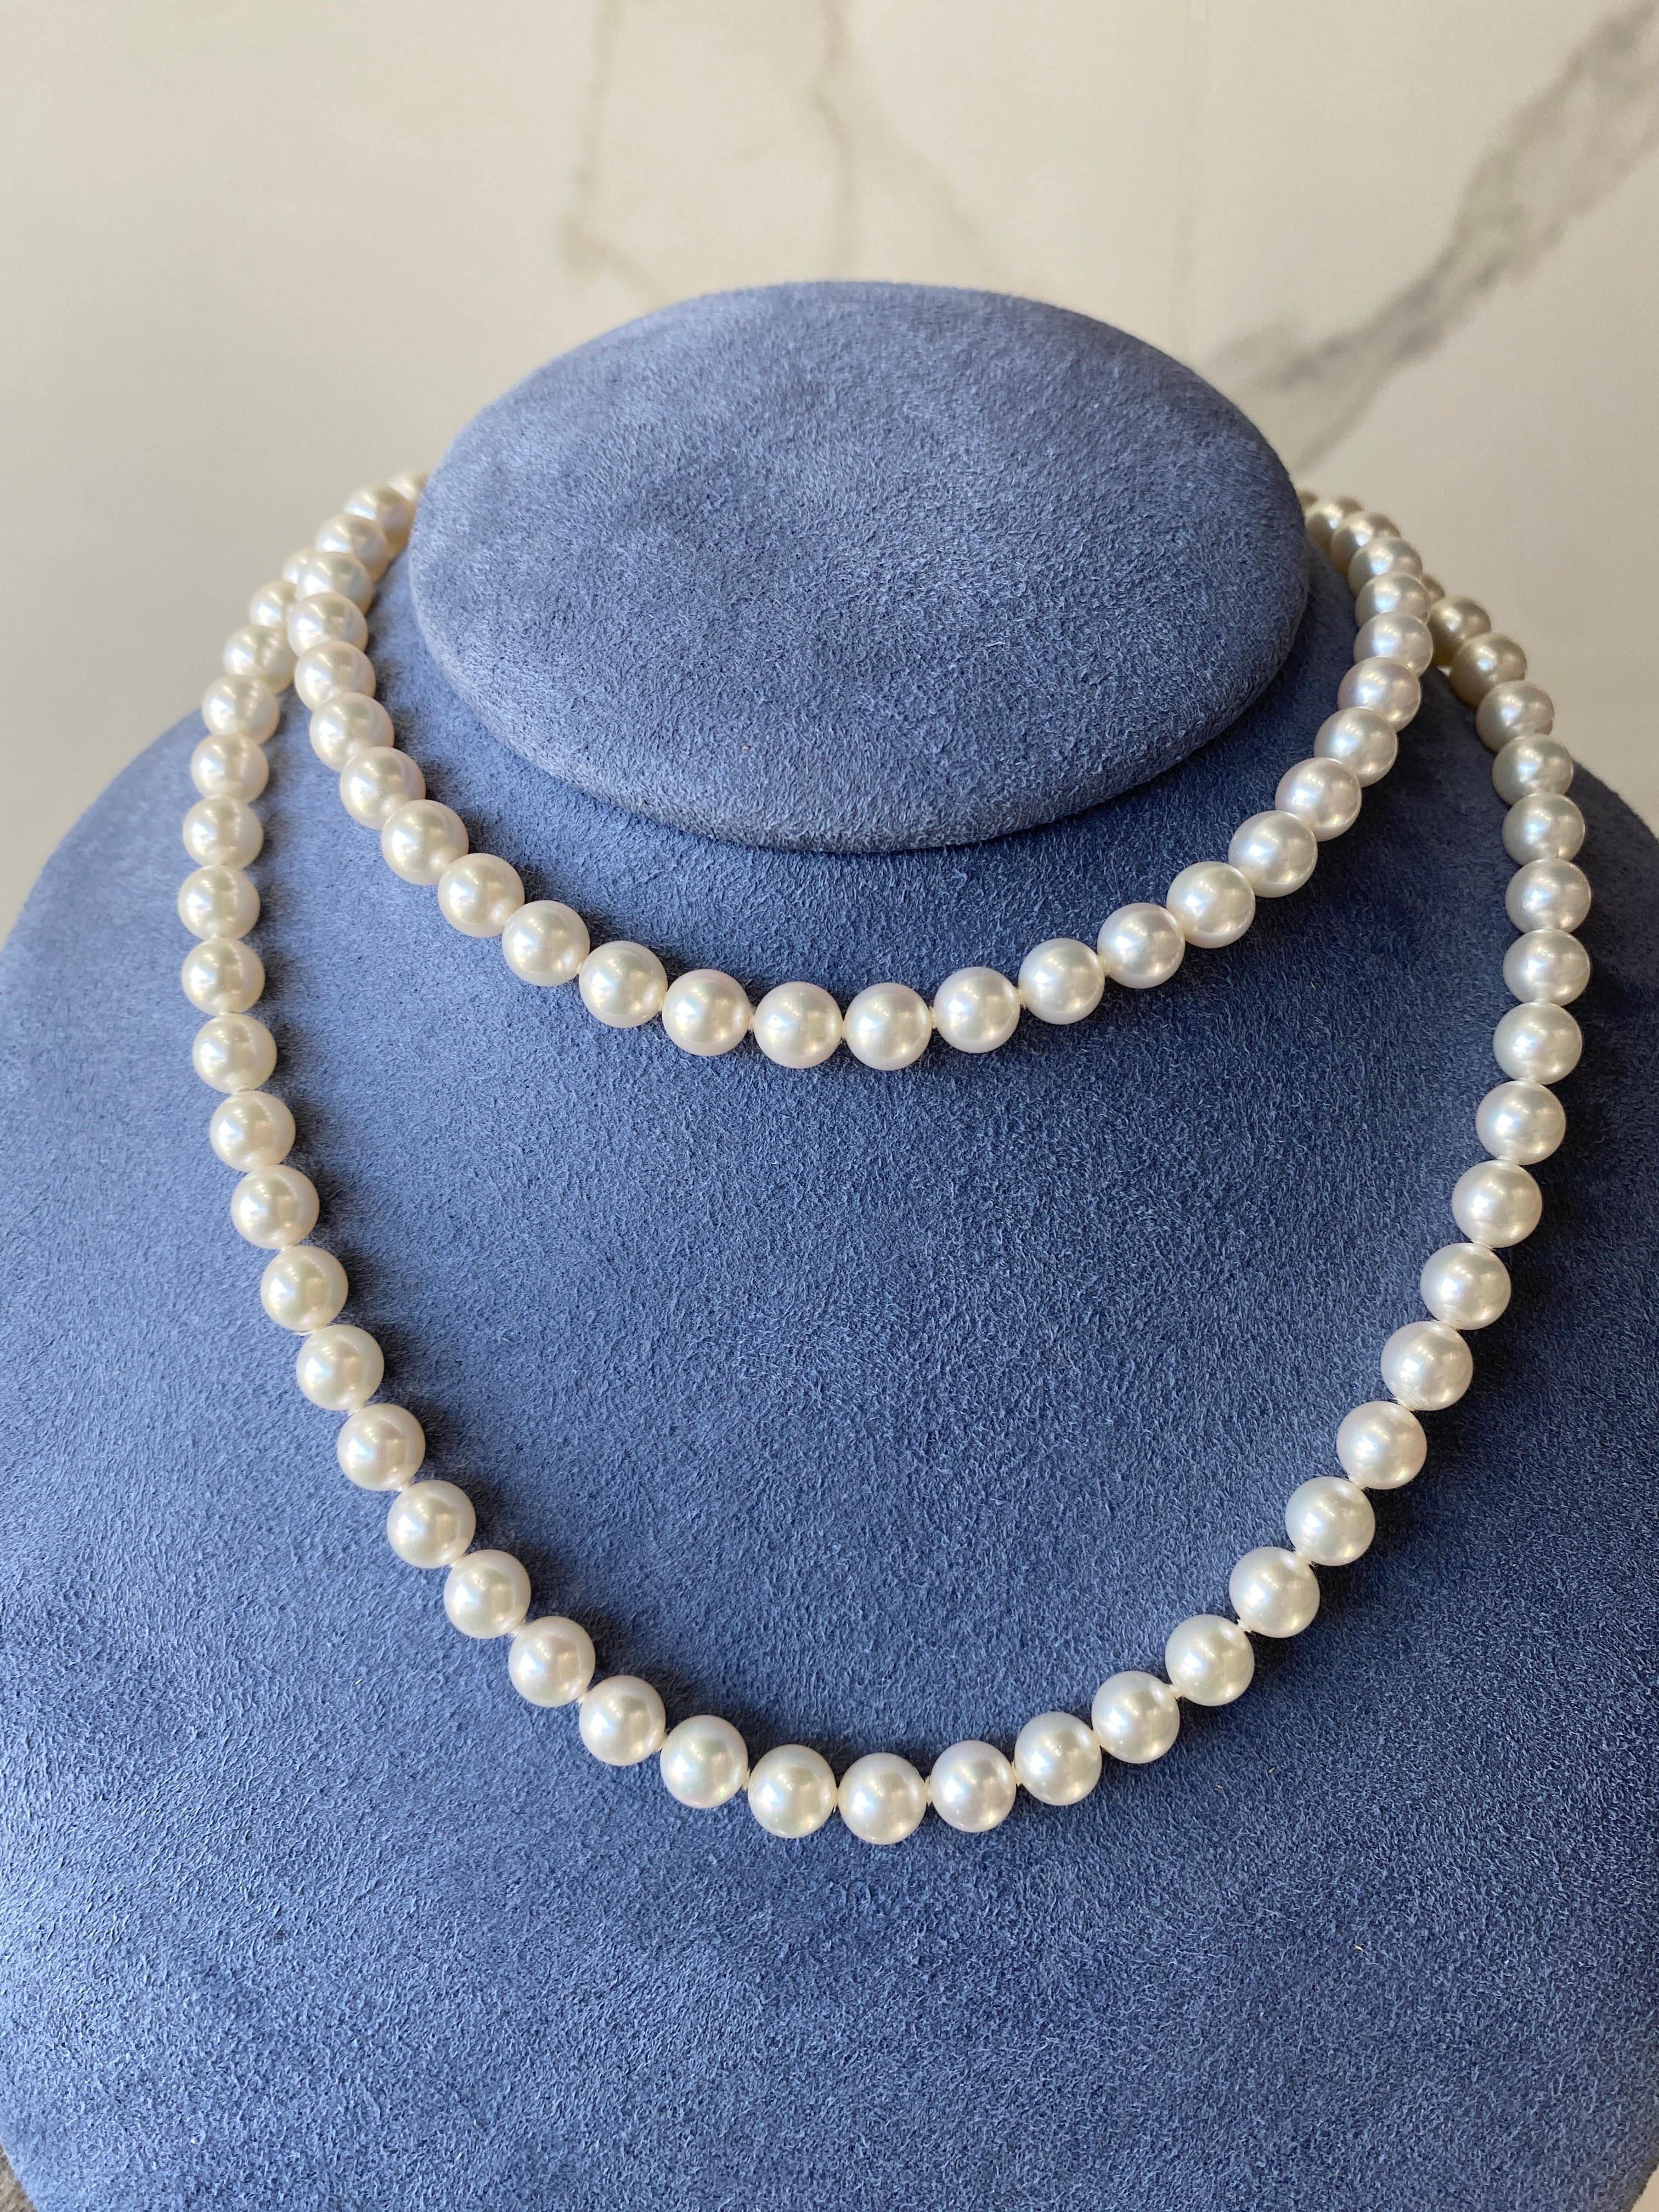 Diese wunderschöne Halskette von Mikimoto besteht aus dreißig Zentimetern wunderschöner und glänzender Akoya-Perlen. 18 Karat Gelbgold Fischhaken Perlen Verschluss. Sie trägt die Kennzeichnung 750 mit dem Mikimoto-Logo auf der Schließe. 
Maße: Die